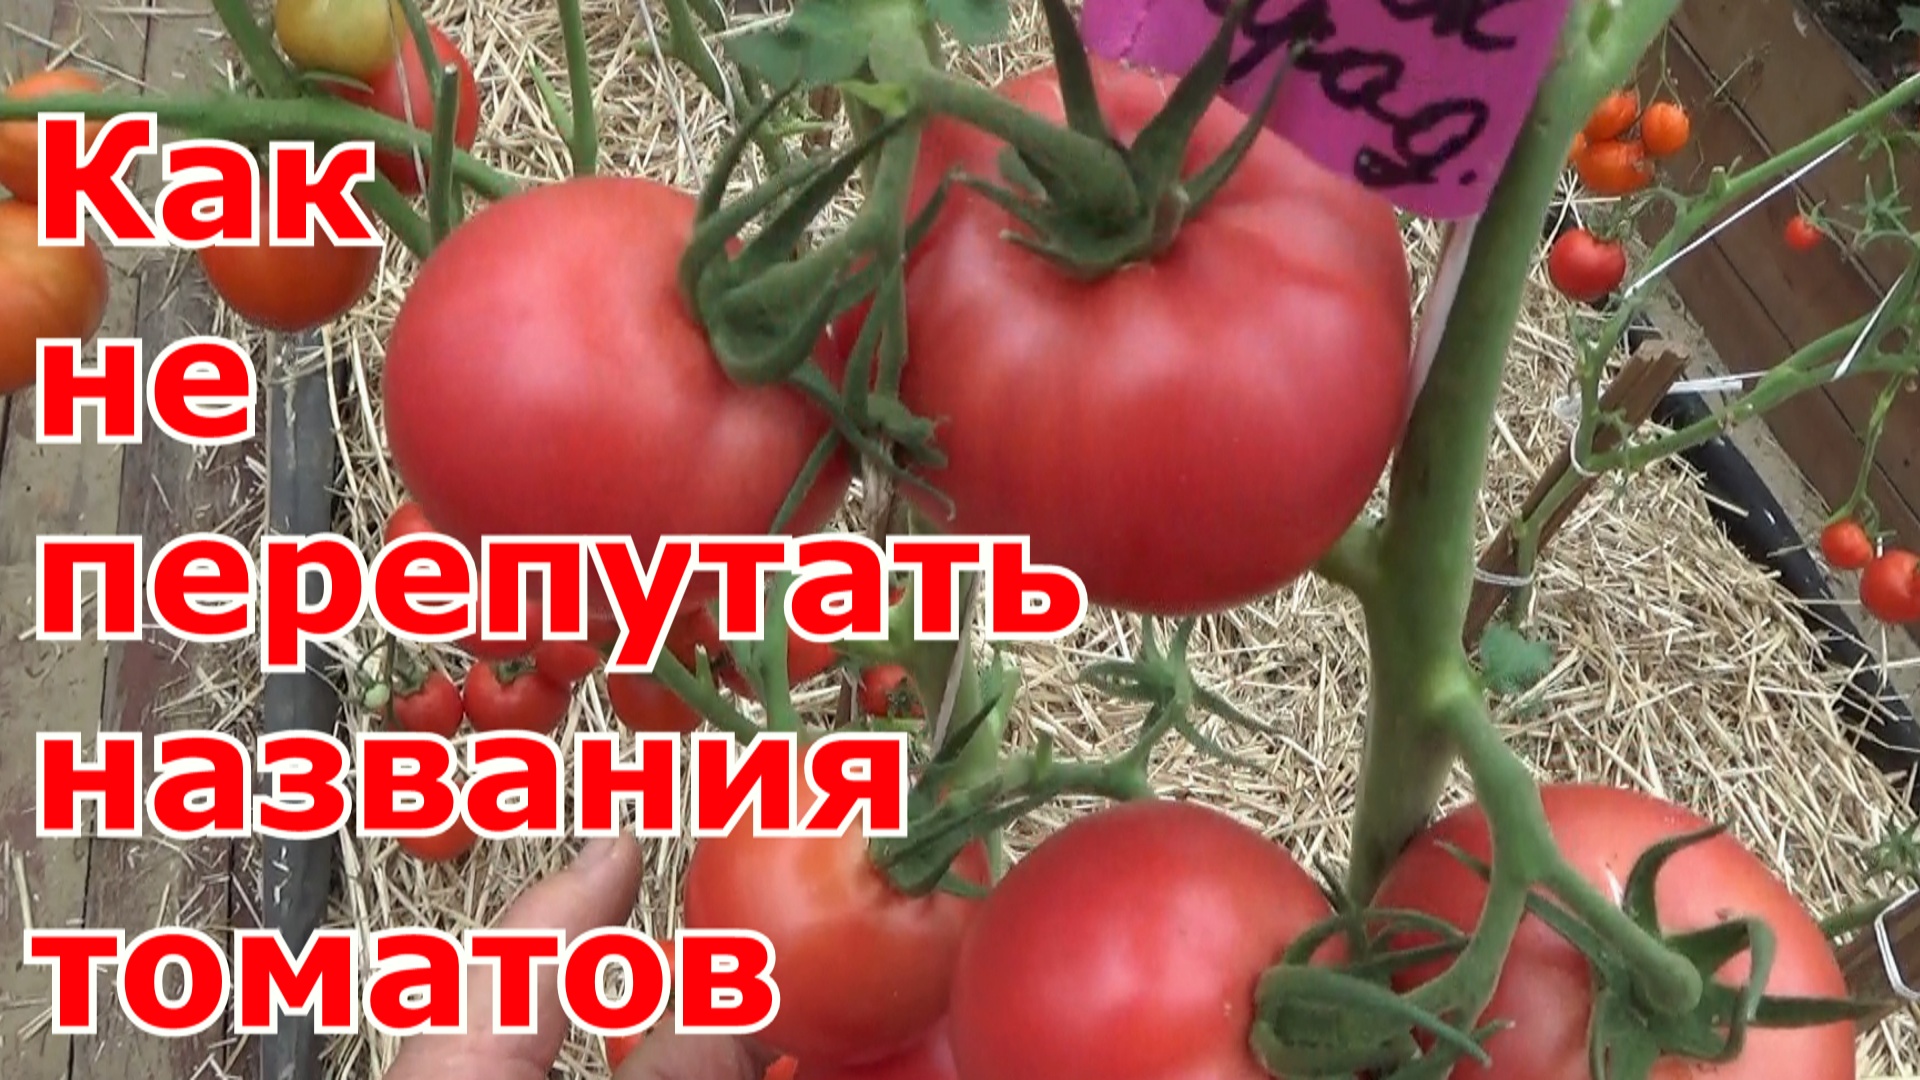 Помидоры Как вырастить много сортов томатов и не запутаться в их названиях от посева до сбора урожая